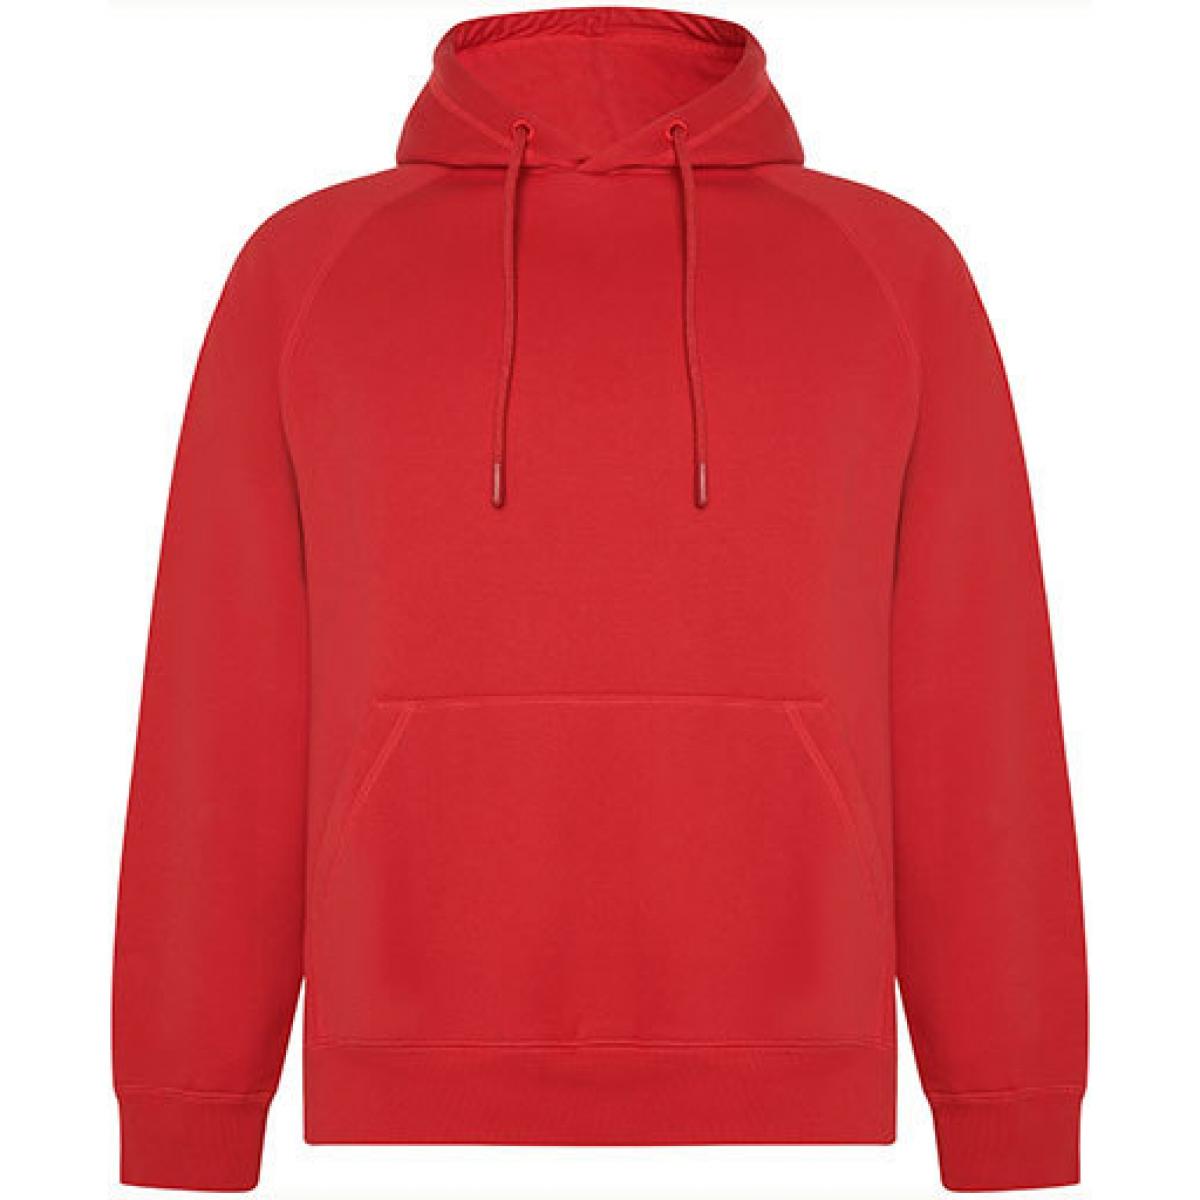 Hersteller: Roly Eco Herstellernummer: SU1074 Artikelbezeichnung: Vinson Organic Hooded Sweatshirt - Unisex Kapuzenpullover Farbe: Red 60